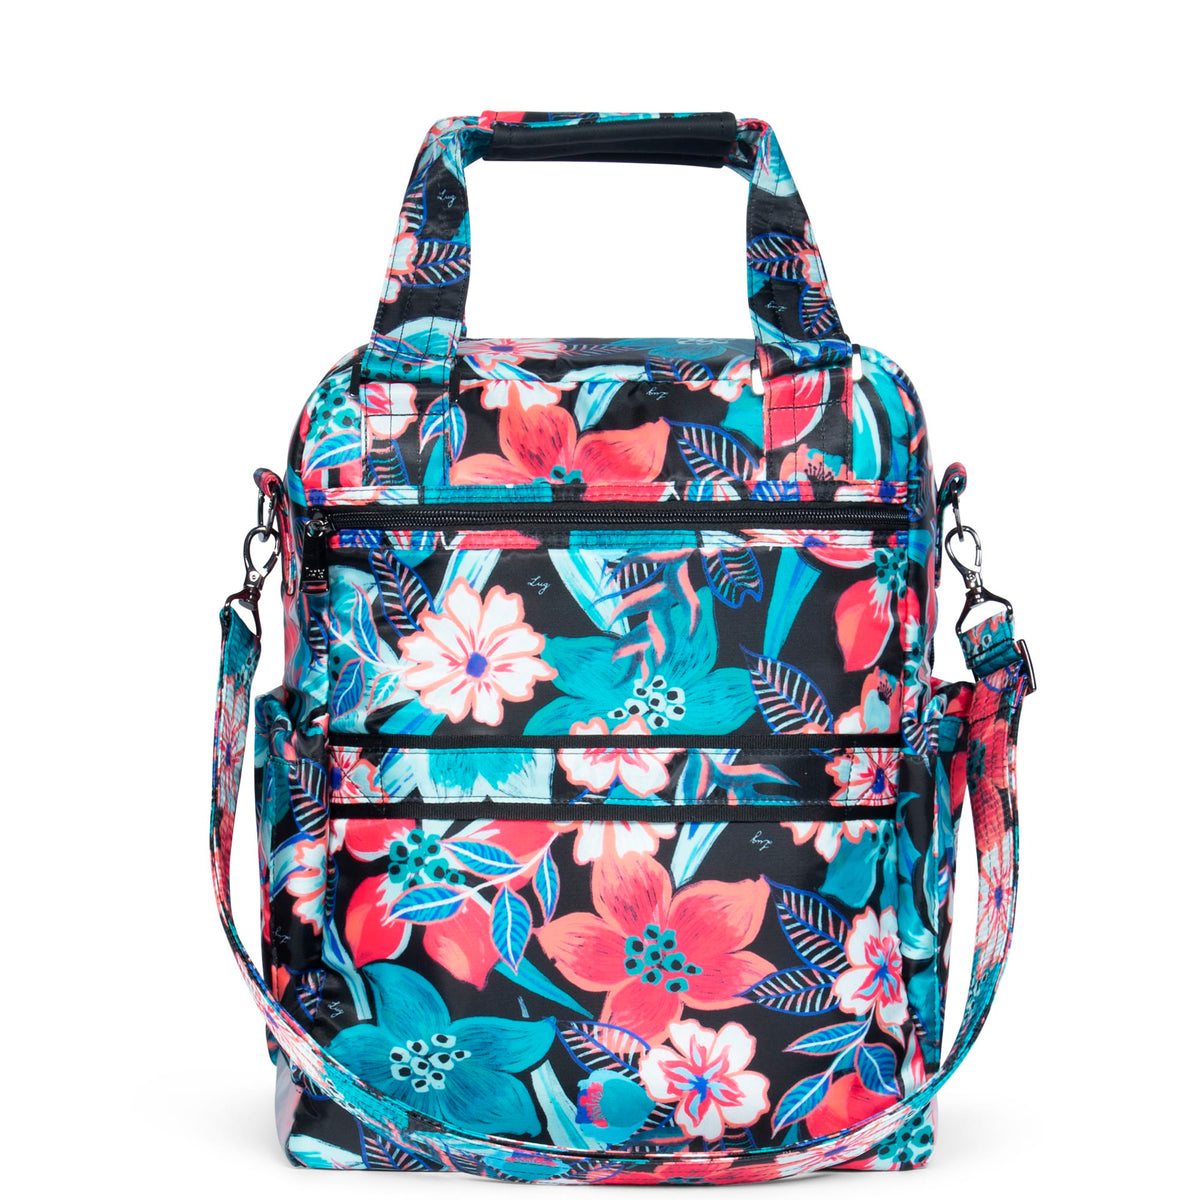 Small Backpack for Women Girls, TSV Black White Checkered Print Bag, Laptop  Bookbag for Travel